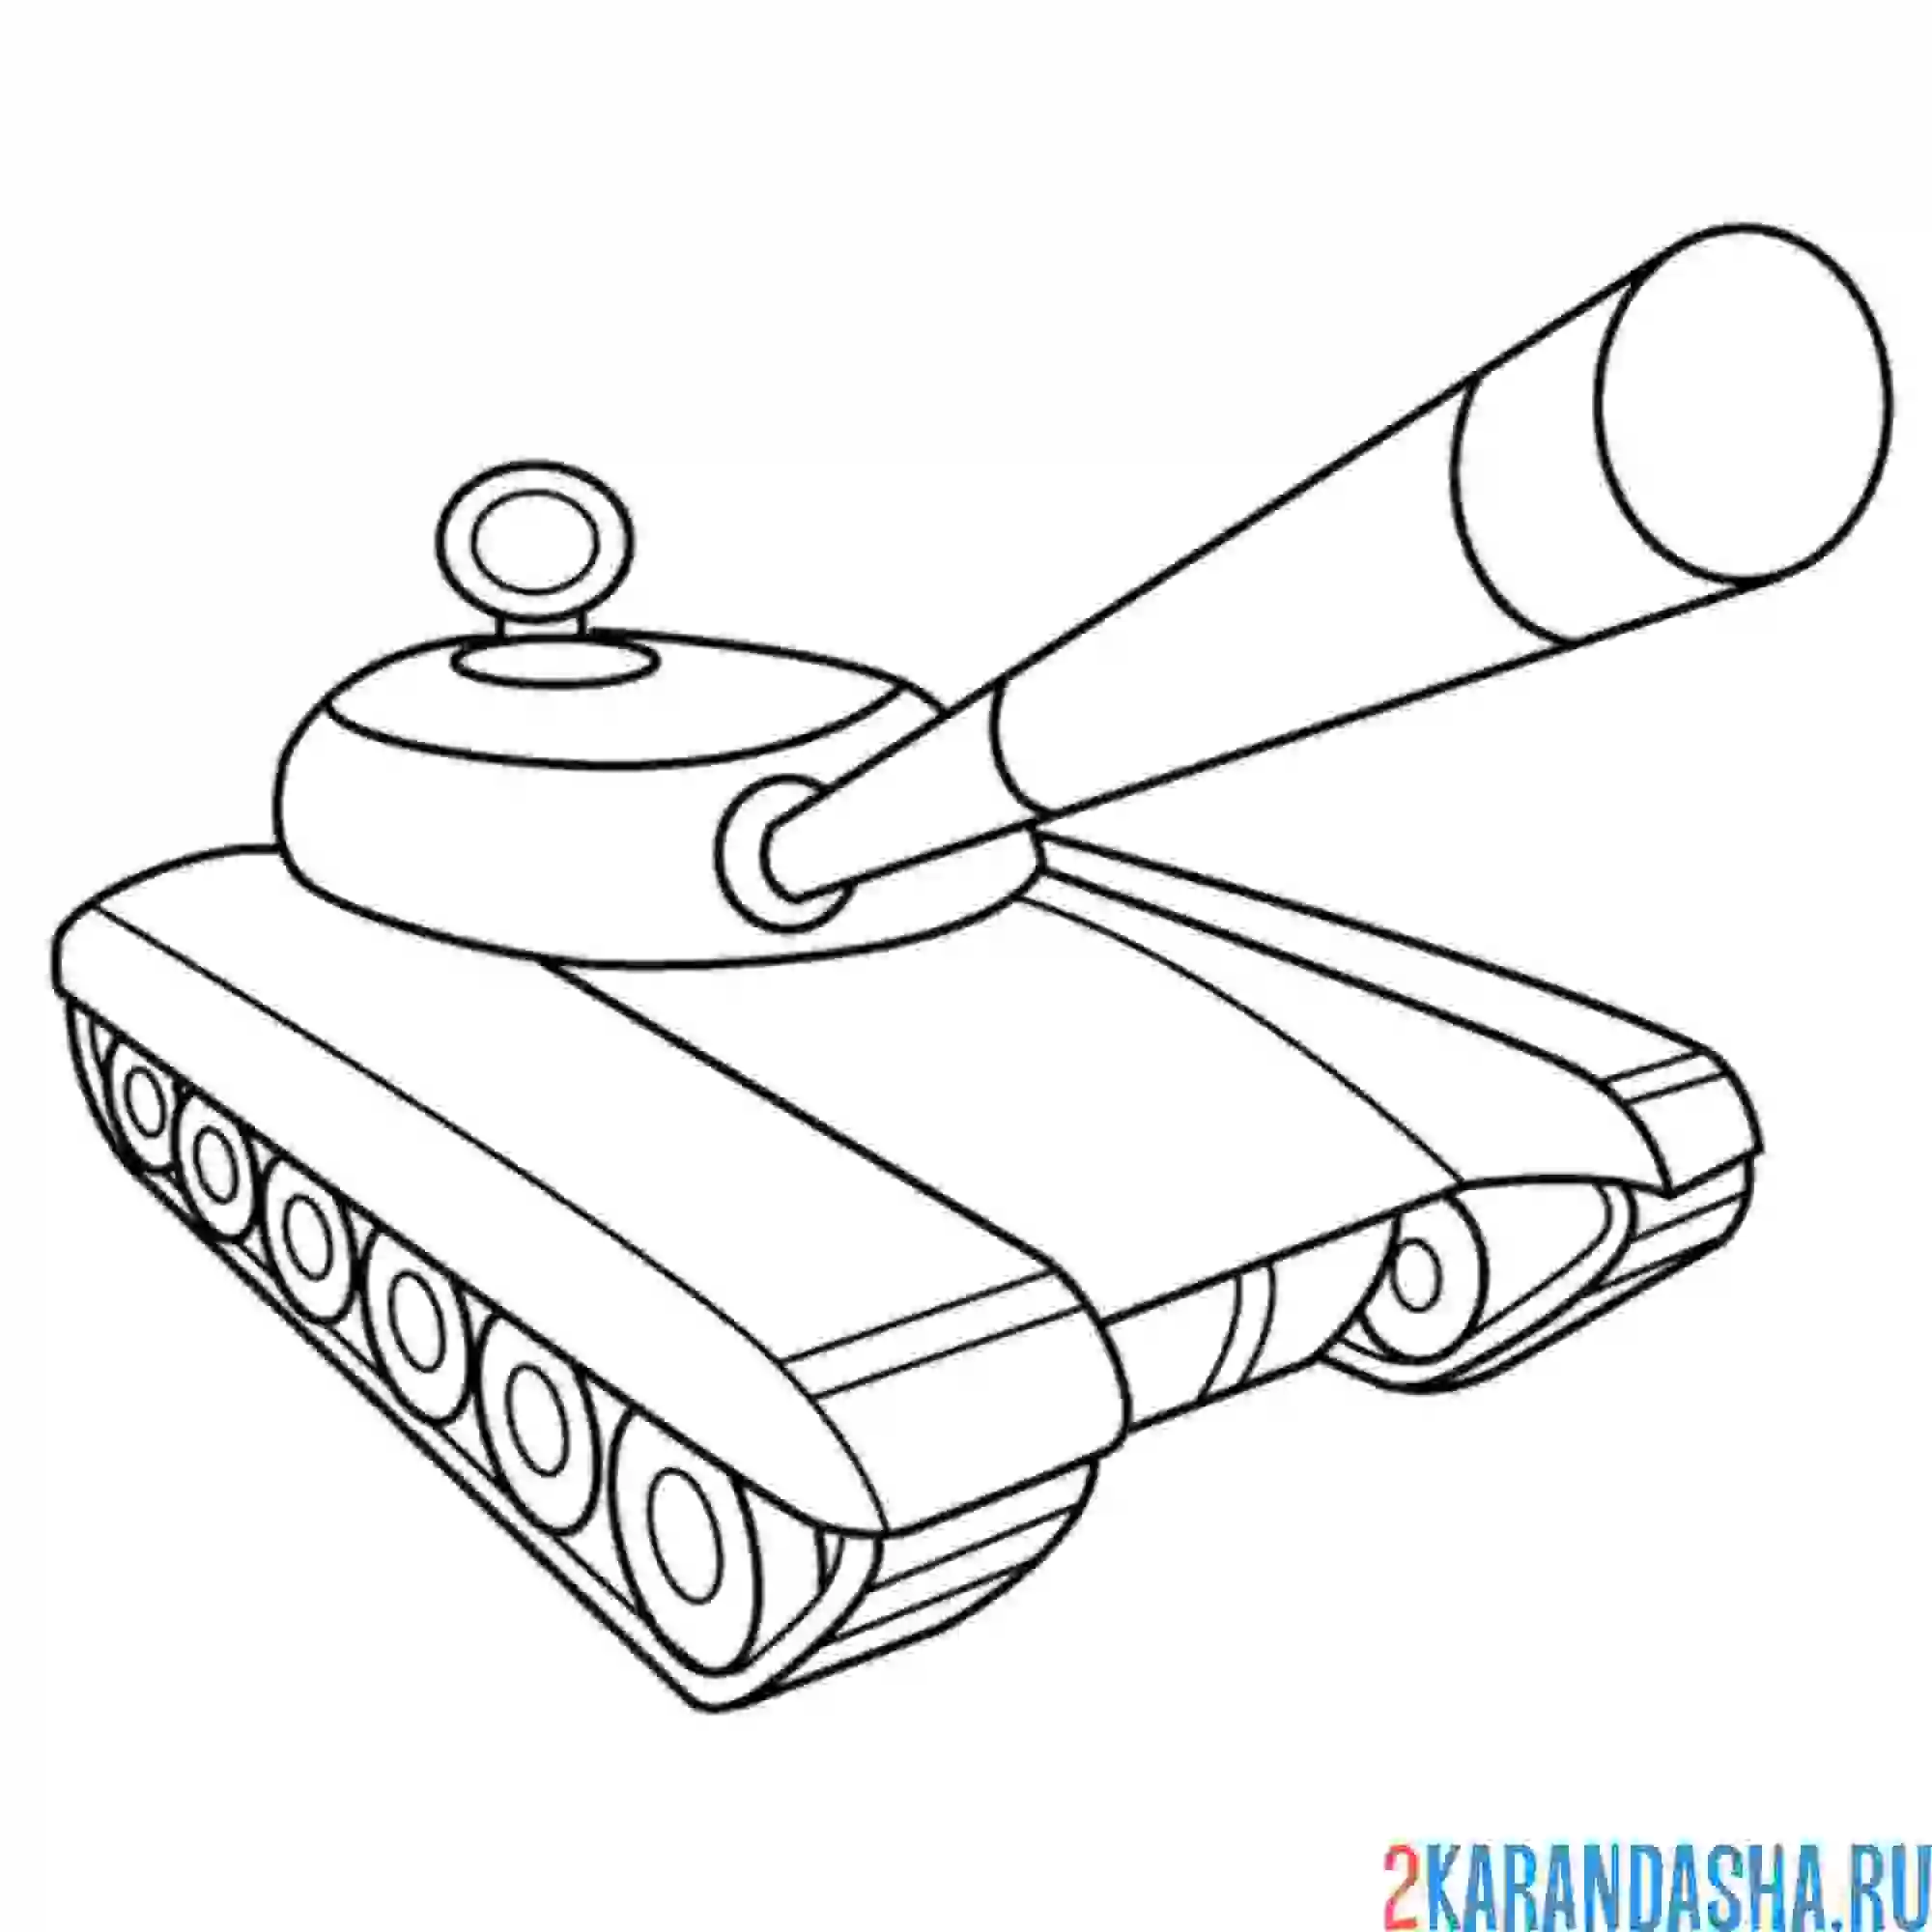 Раскраска детская моделька танки